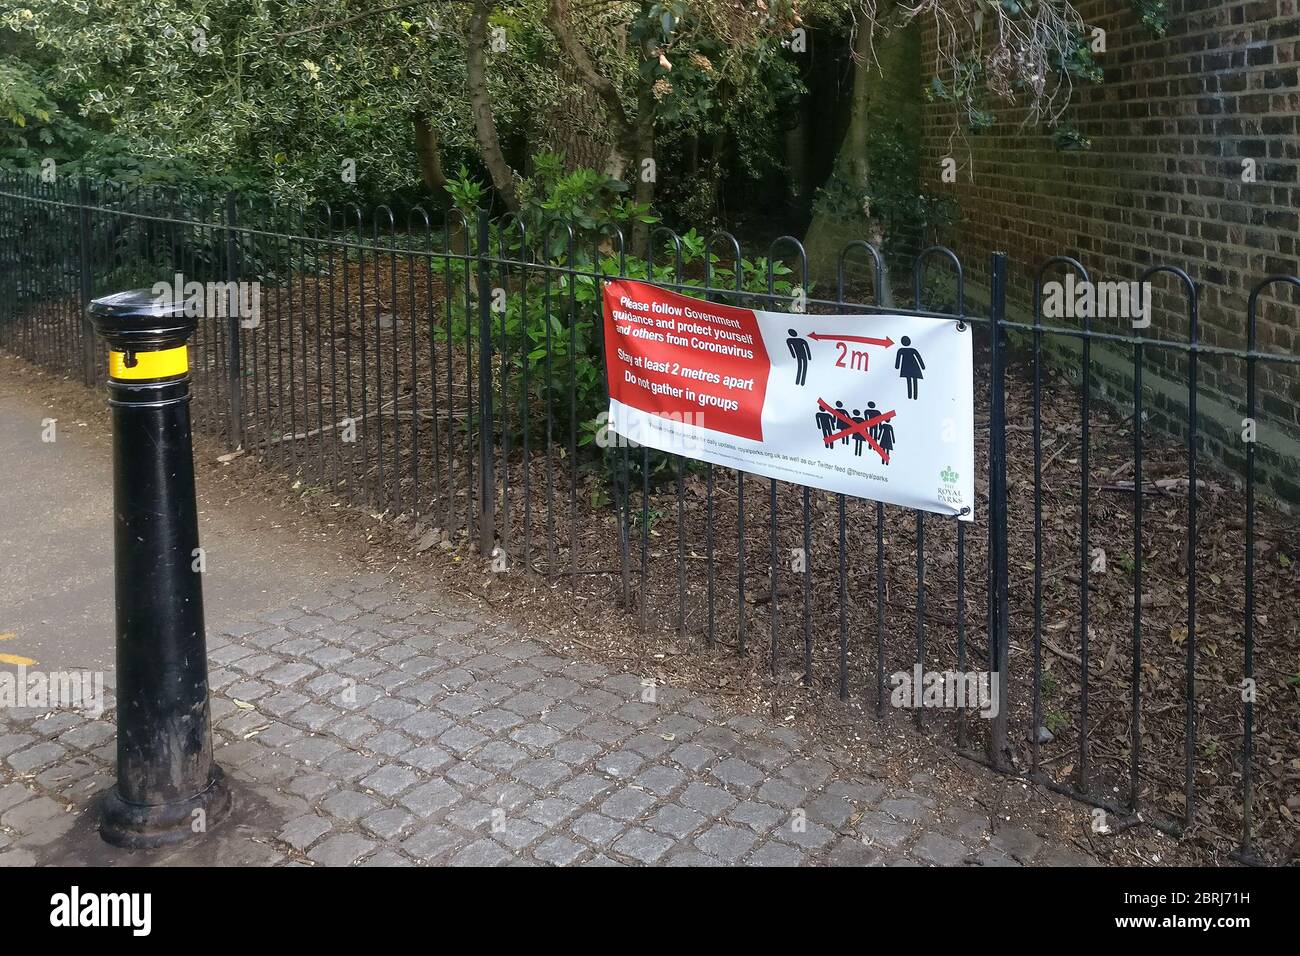 Londres, Royaume-Uni - 27 avril 2020 : panneau de sécurité pour les conseils de prévention des virus sur la clôture du parc de Lewisham en raison du coronavirus covid-19. De nombreux lieux publics Banque D'Images